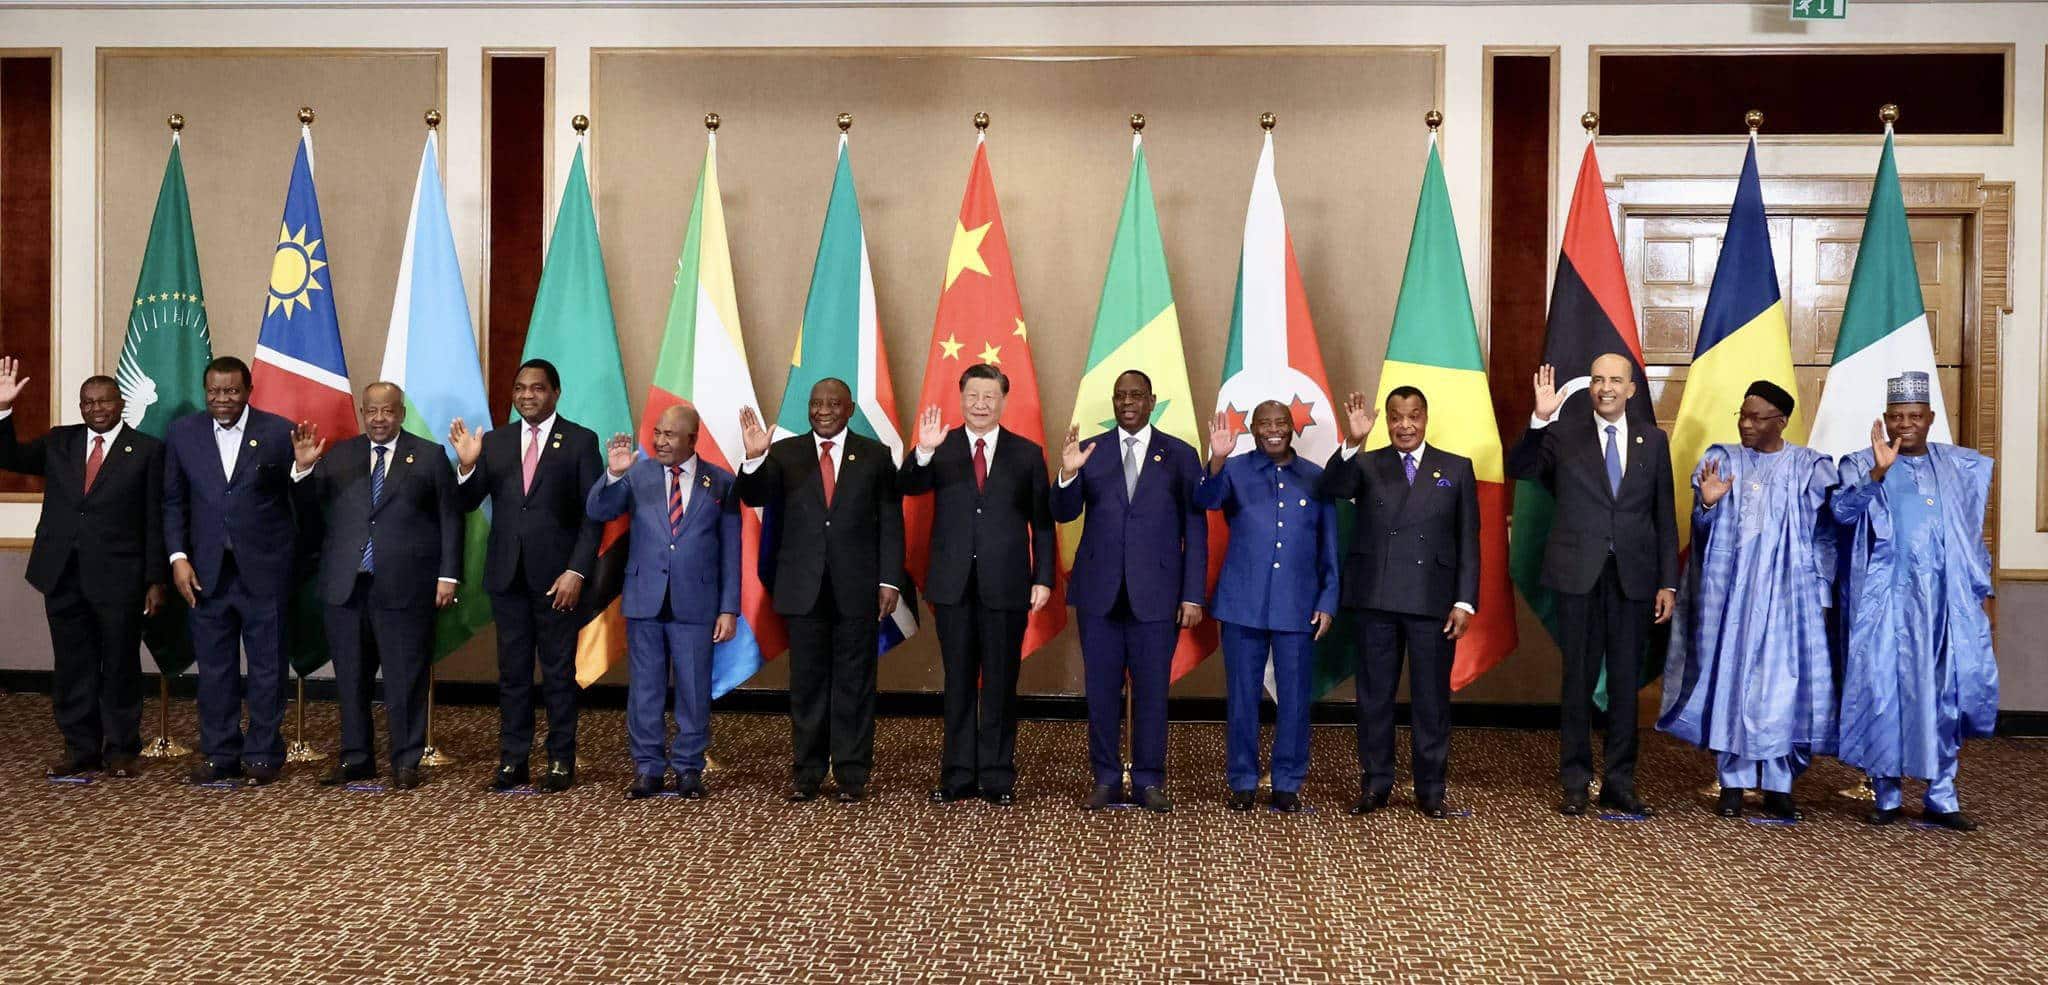 Les dirigeants des BRICS lors du sommet en Afrique du Sud le 24 août. Credit:apaimages/SIPA/2308261340